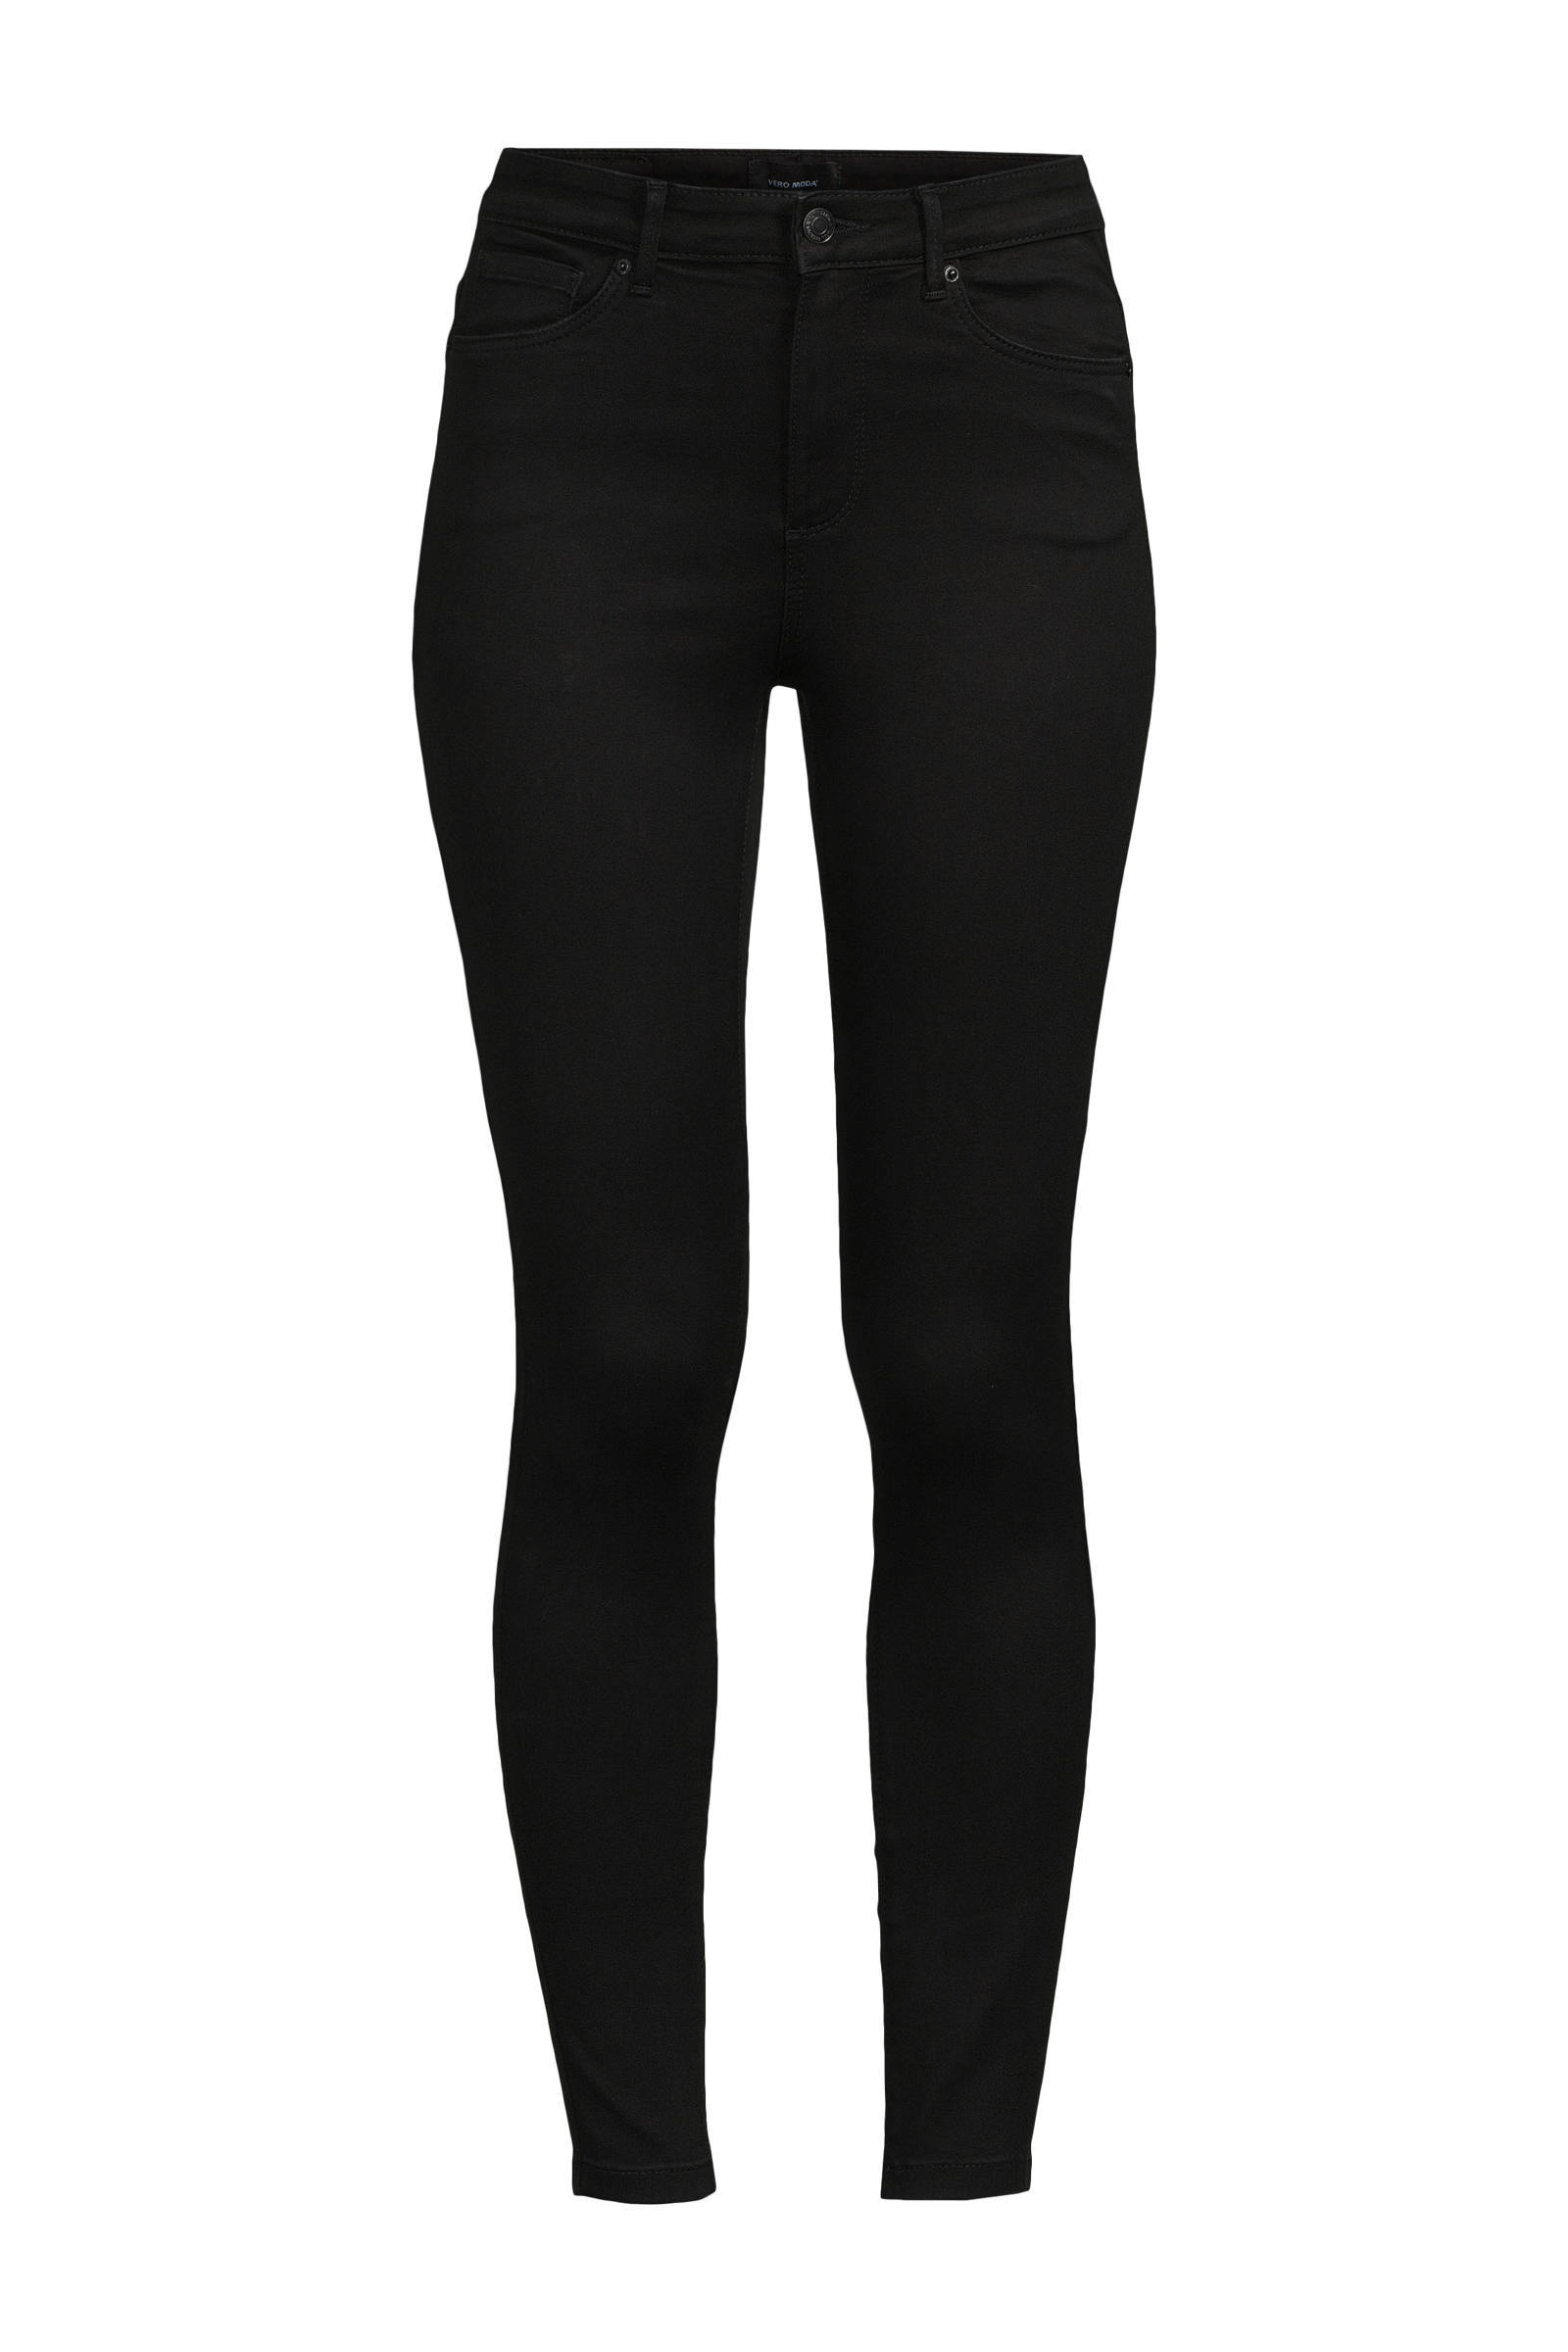 VERO MODA high waist skinny jeans VMSOPHIA black online kopen